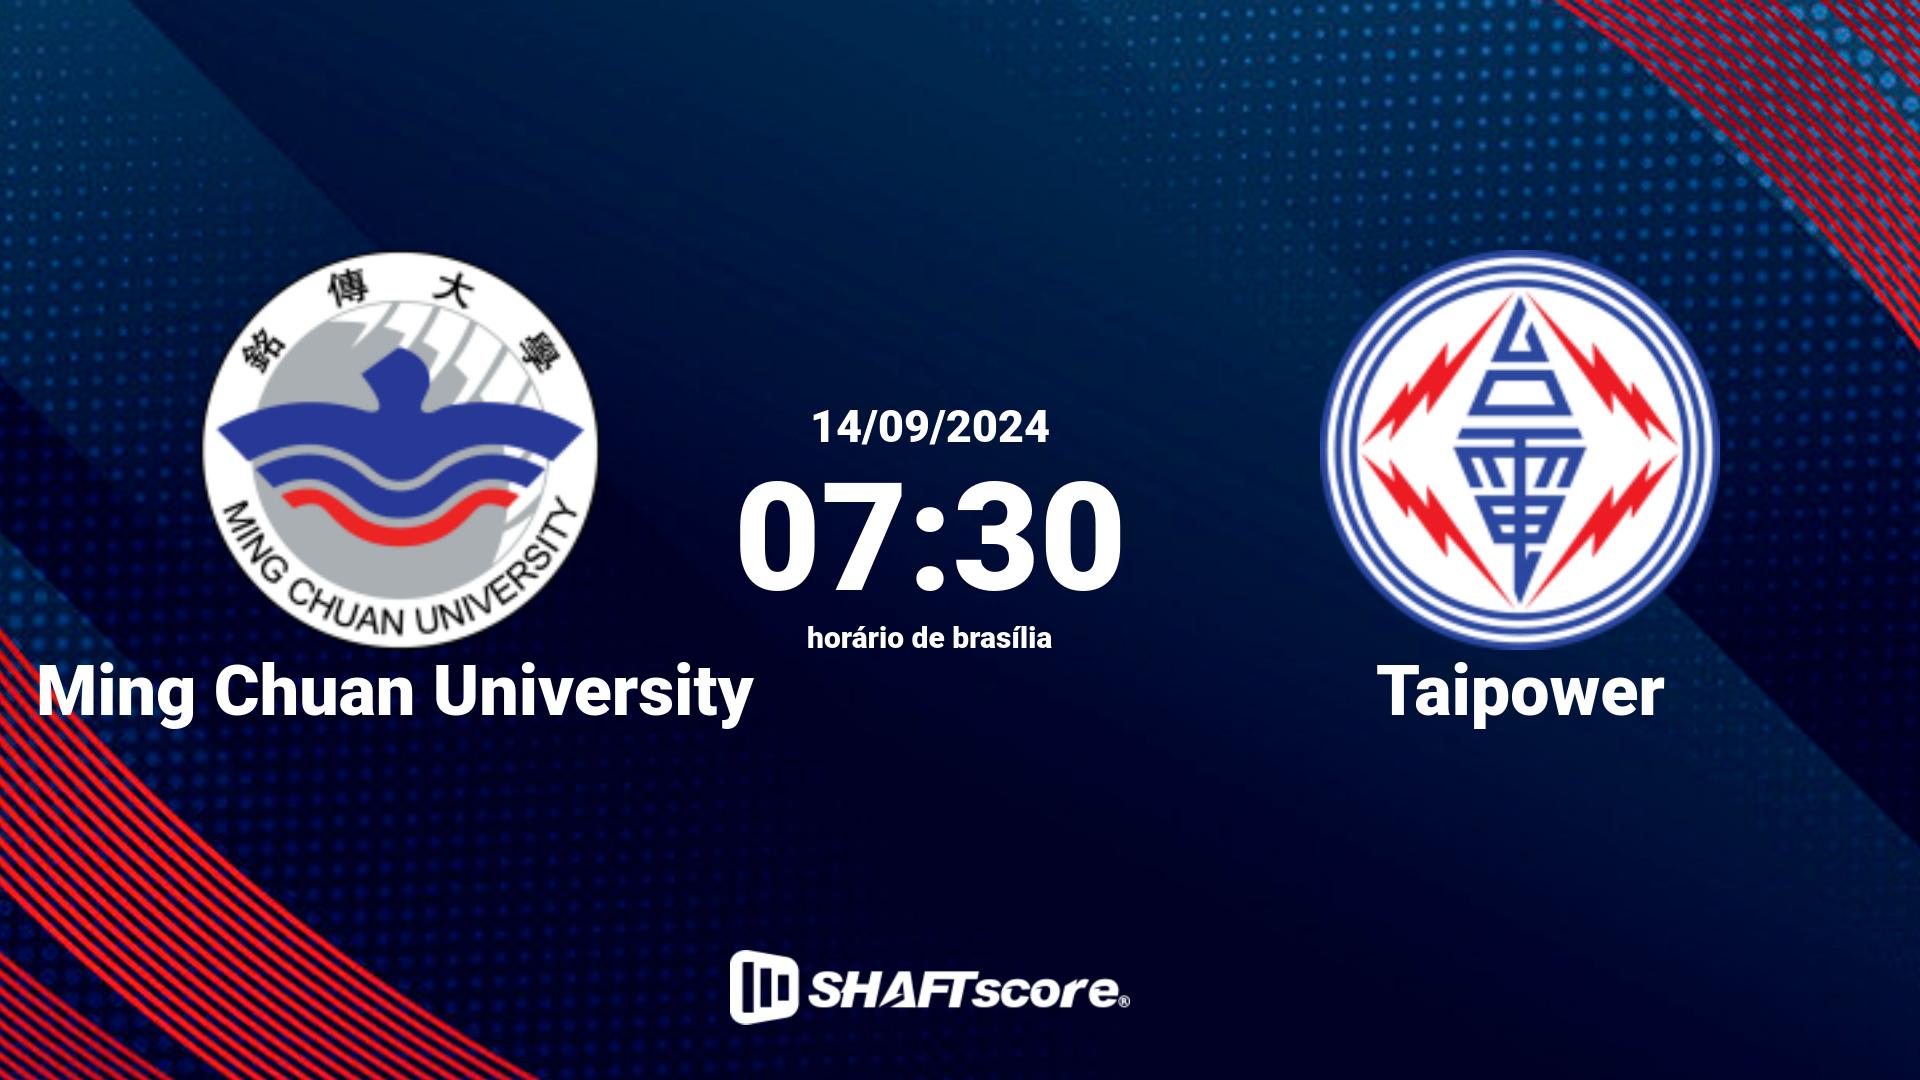 Estatísticas do jogo Ming Chuan University vs Taipower 14.09 07:30